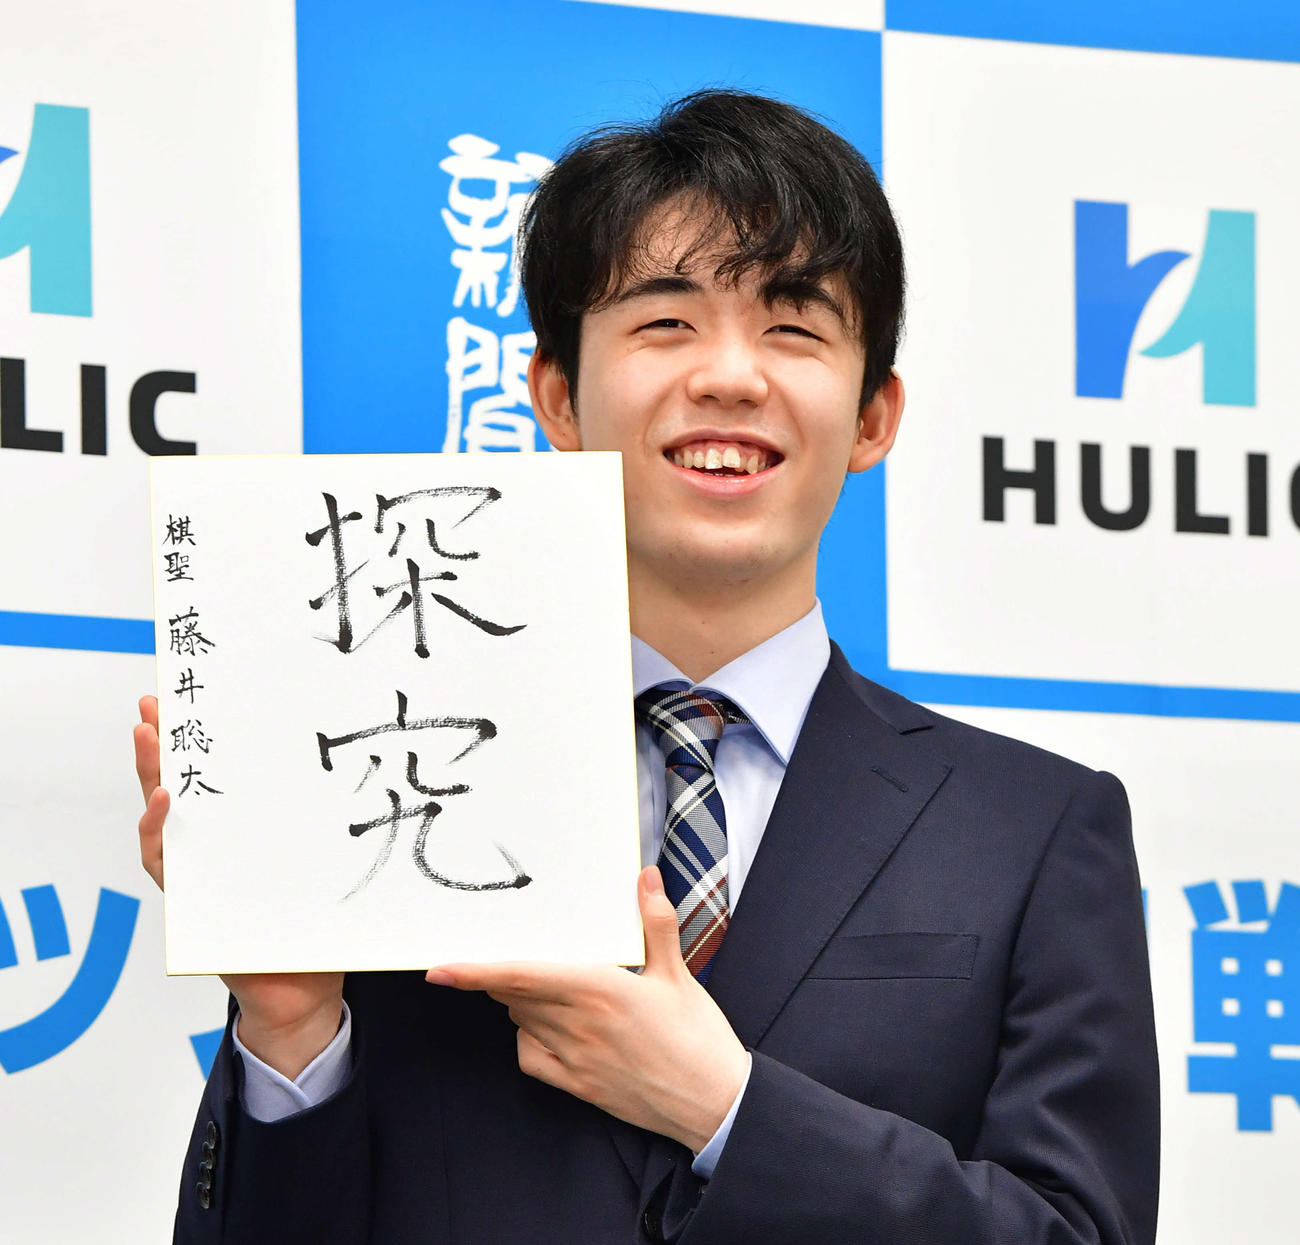 7月17日、初タイトル獲得から一夜明け、「探究」と書いた色紙を手に笑顔を見せる藤井聡太新棋聖